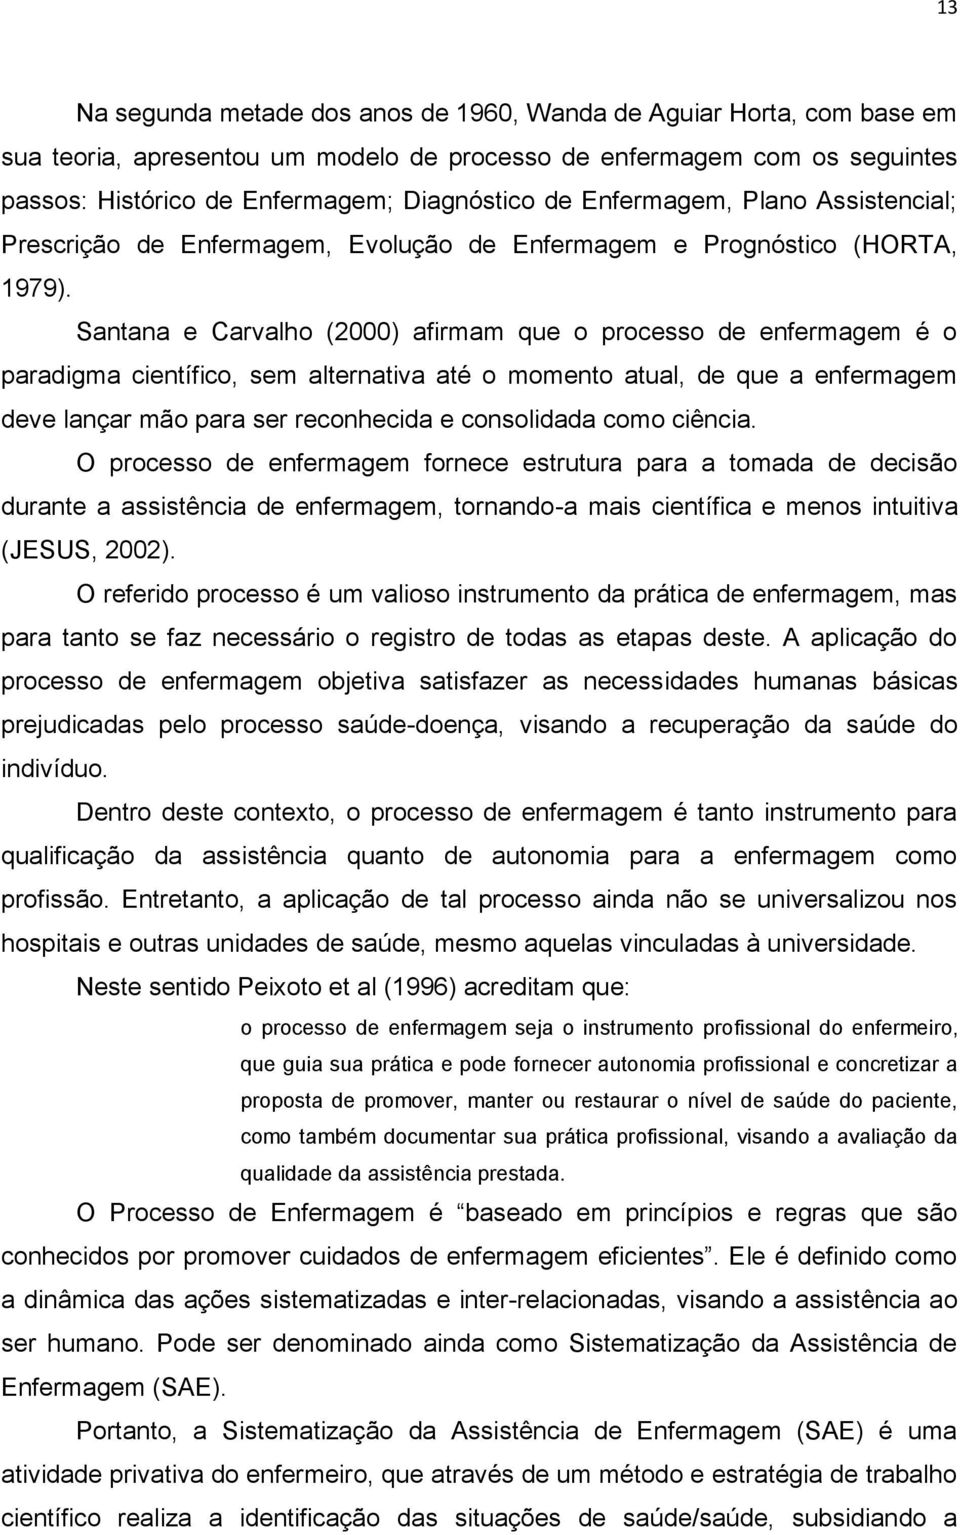 Santana e Carvalho (2000) afirmam que o processo de enfermagem é o paradigma científico, sem alternativa até o momento atual, de que a enfermagem deve lançar mão para ser reconhecida e consolidada